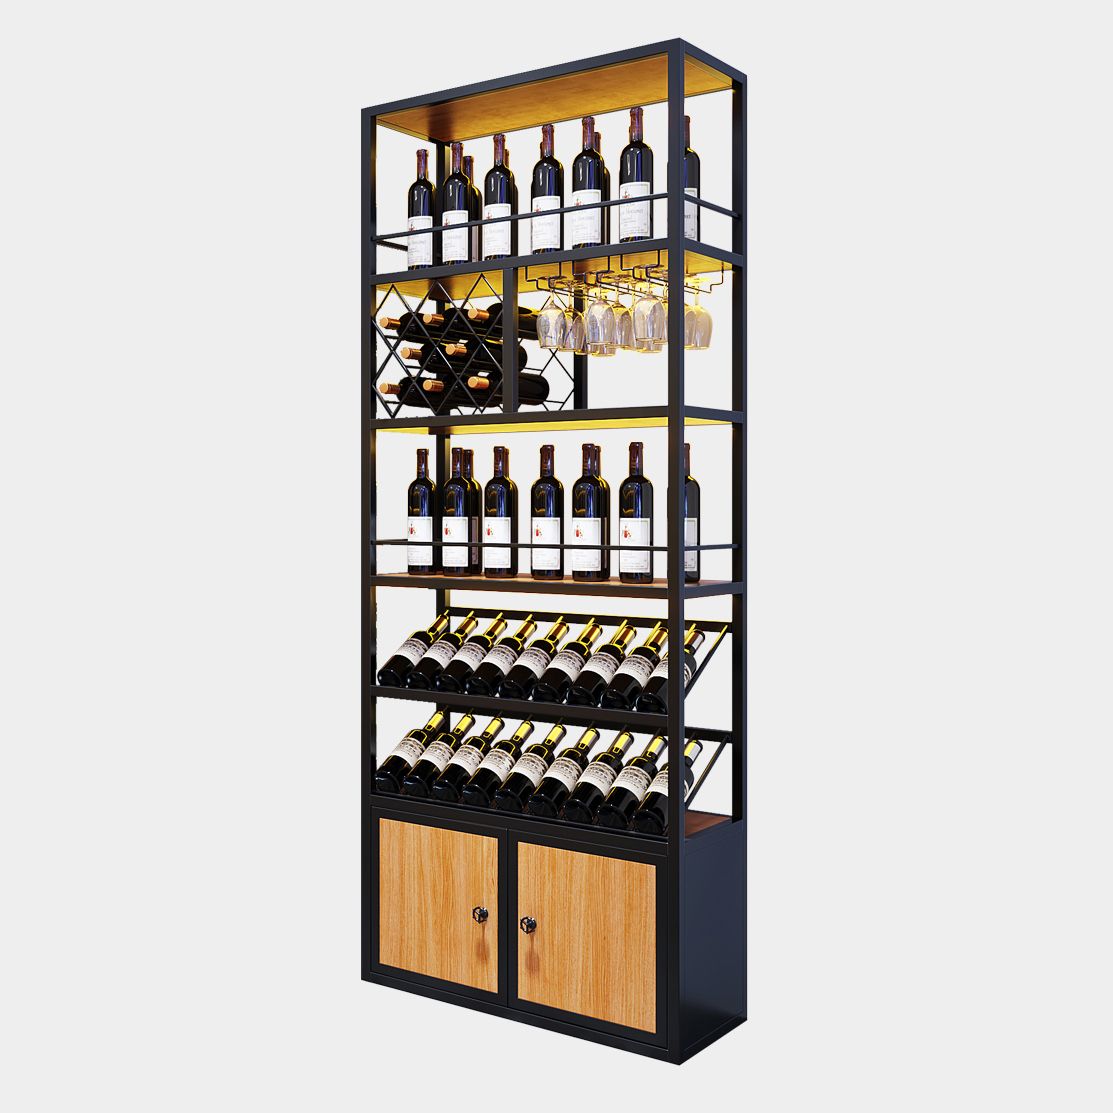 Modern Floor Wine Bottle & Glass Rack Metal Stackable Wine Rack